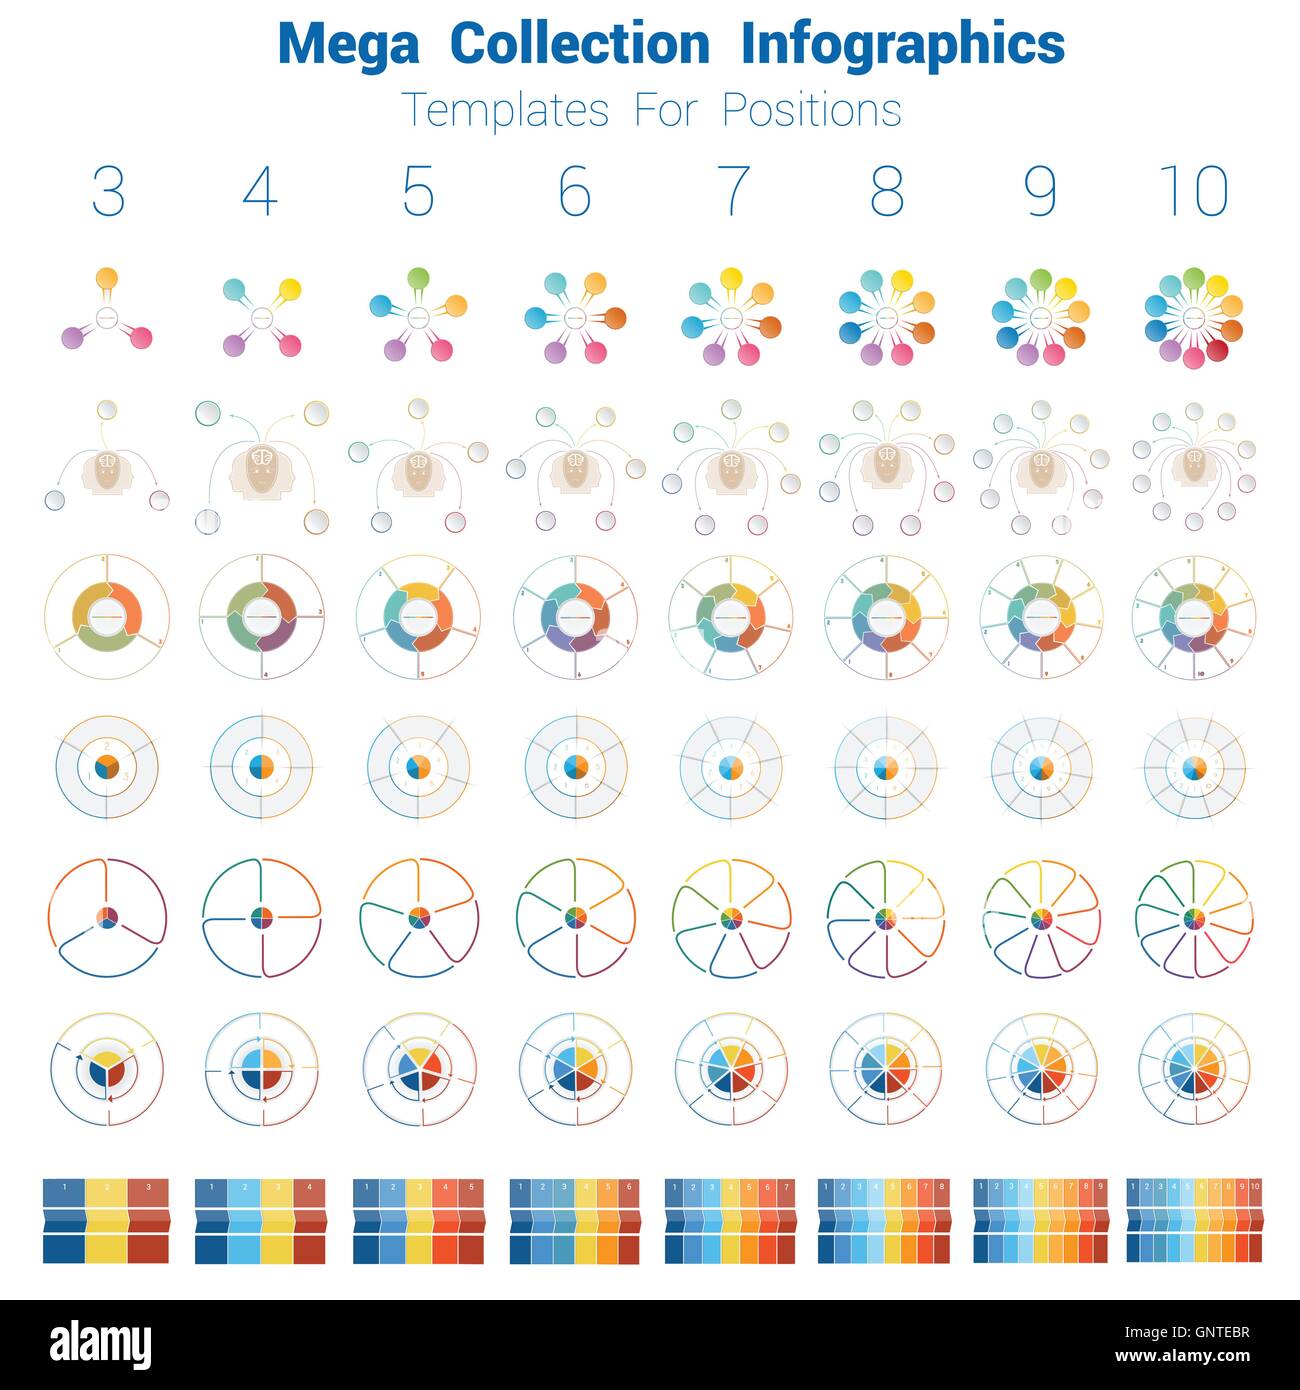 Mega Sammlung Infografiken zyklischen Prozesse, Vorlagen für Textbereich 3, 4, 5, 6, 7, 8, 9, 10 Positionen Stock Vektor